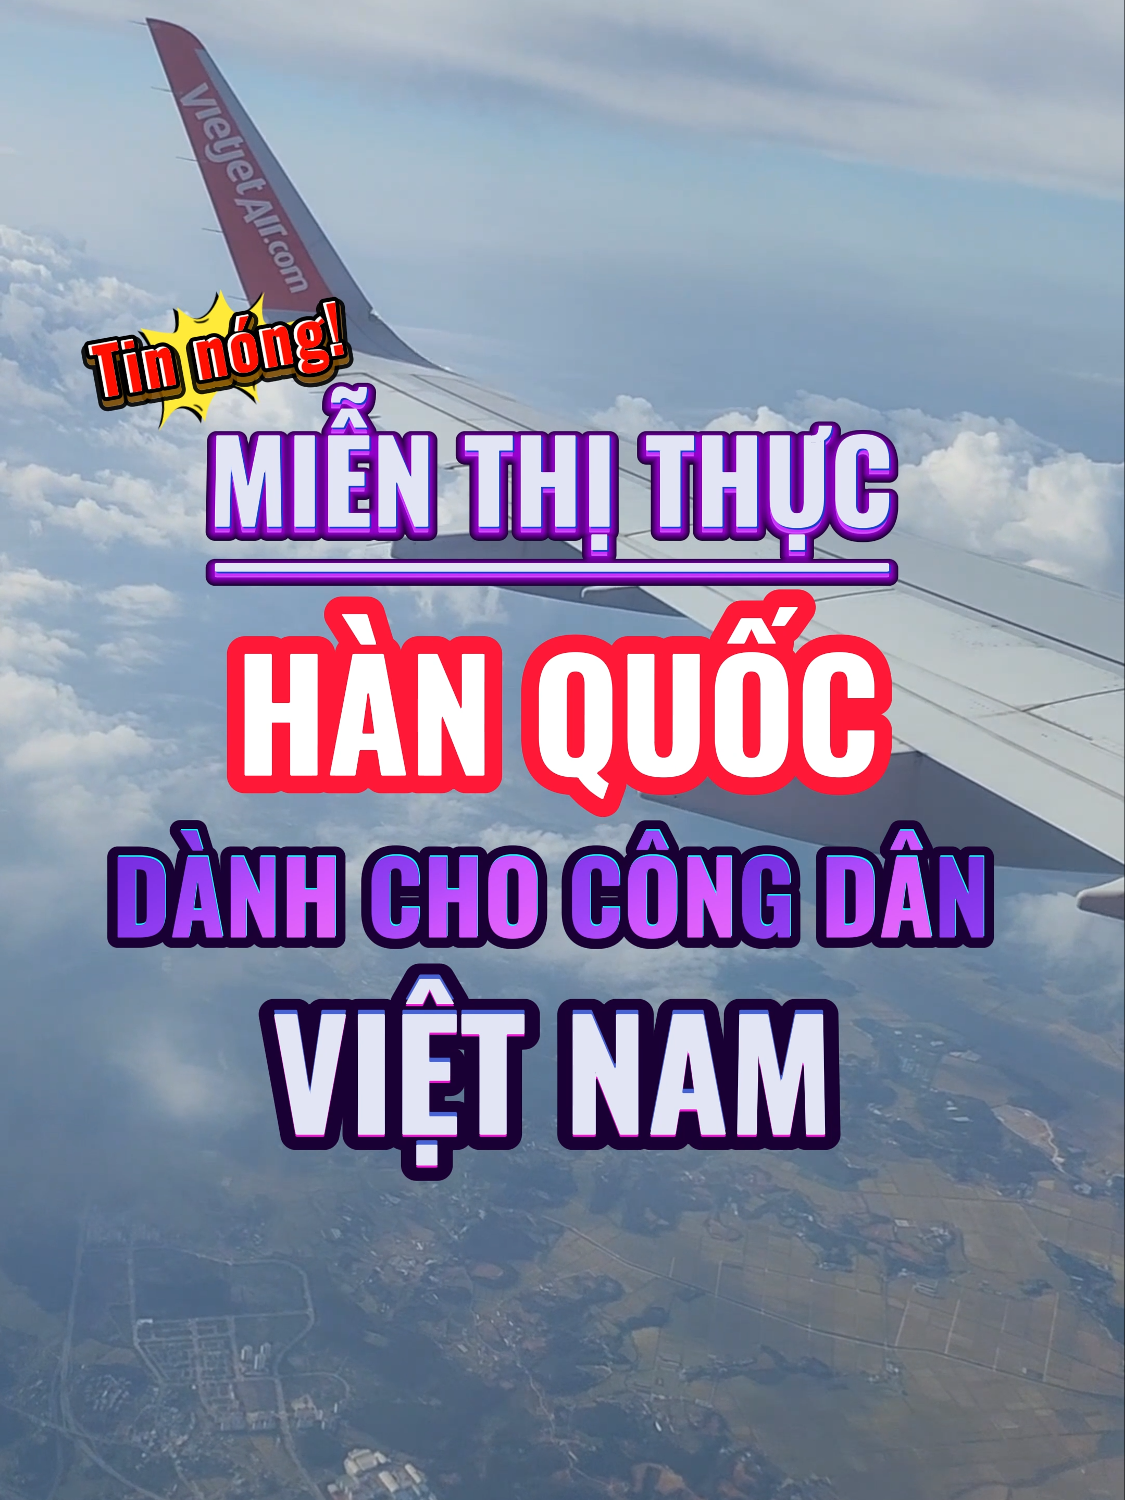 Hàn Quốc sẽ thực sự MIỄN VISA nhập cảnh cho công dân Việt Nam sắp tới??? #visa #thịthực #tintuc #dulich #dulichhanquoc #hanquoc #korea #vietnam #sworldtravel #thươngmại #xuhuong